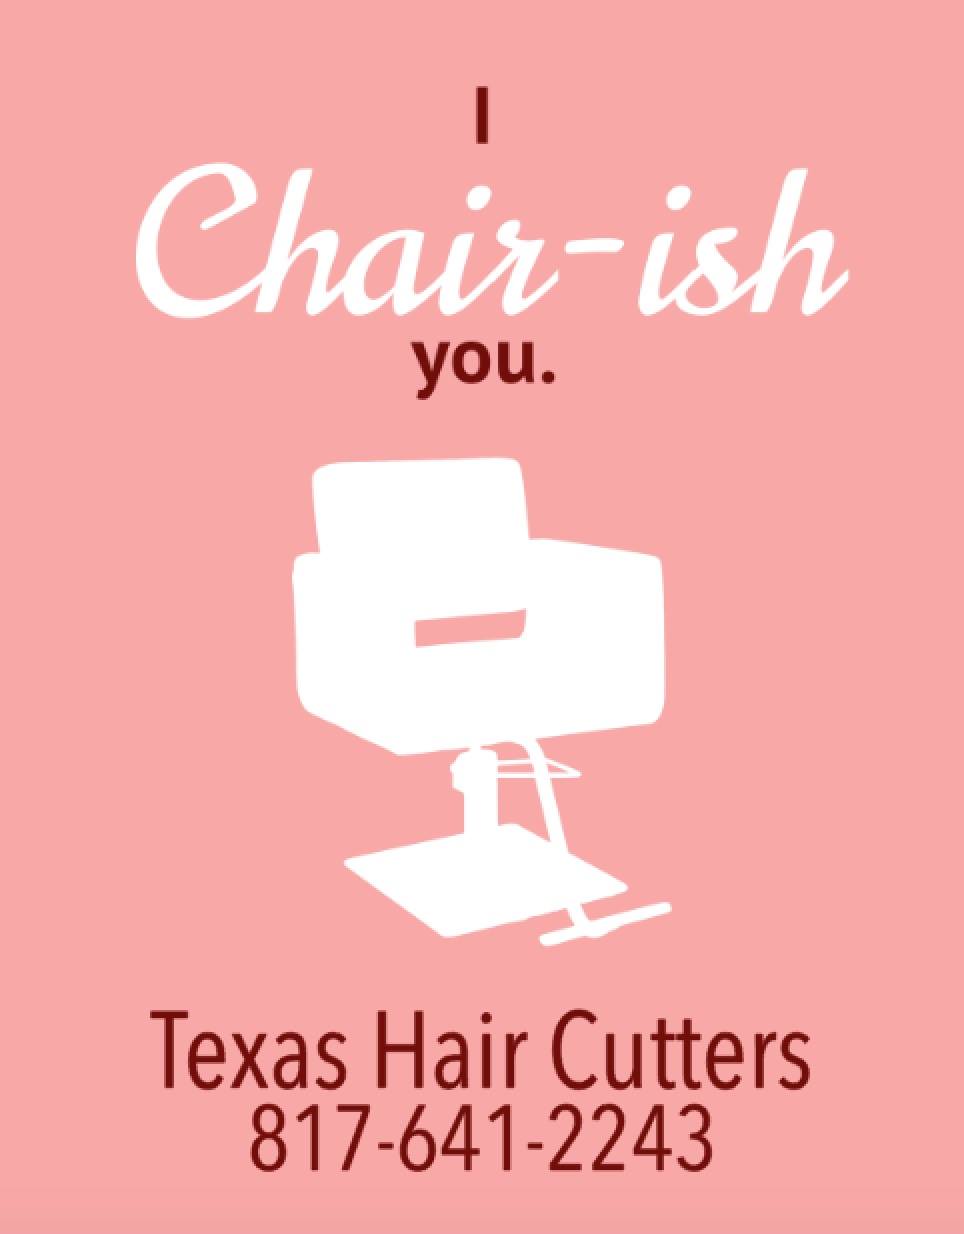 Texas Hair Cutters